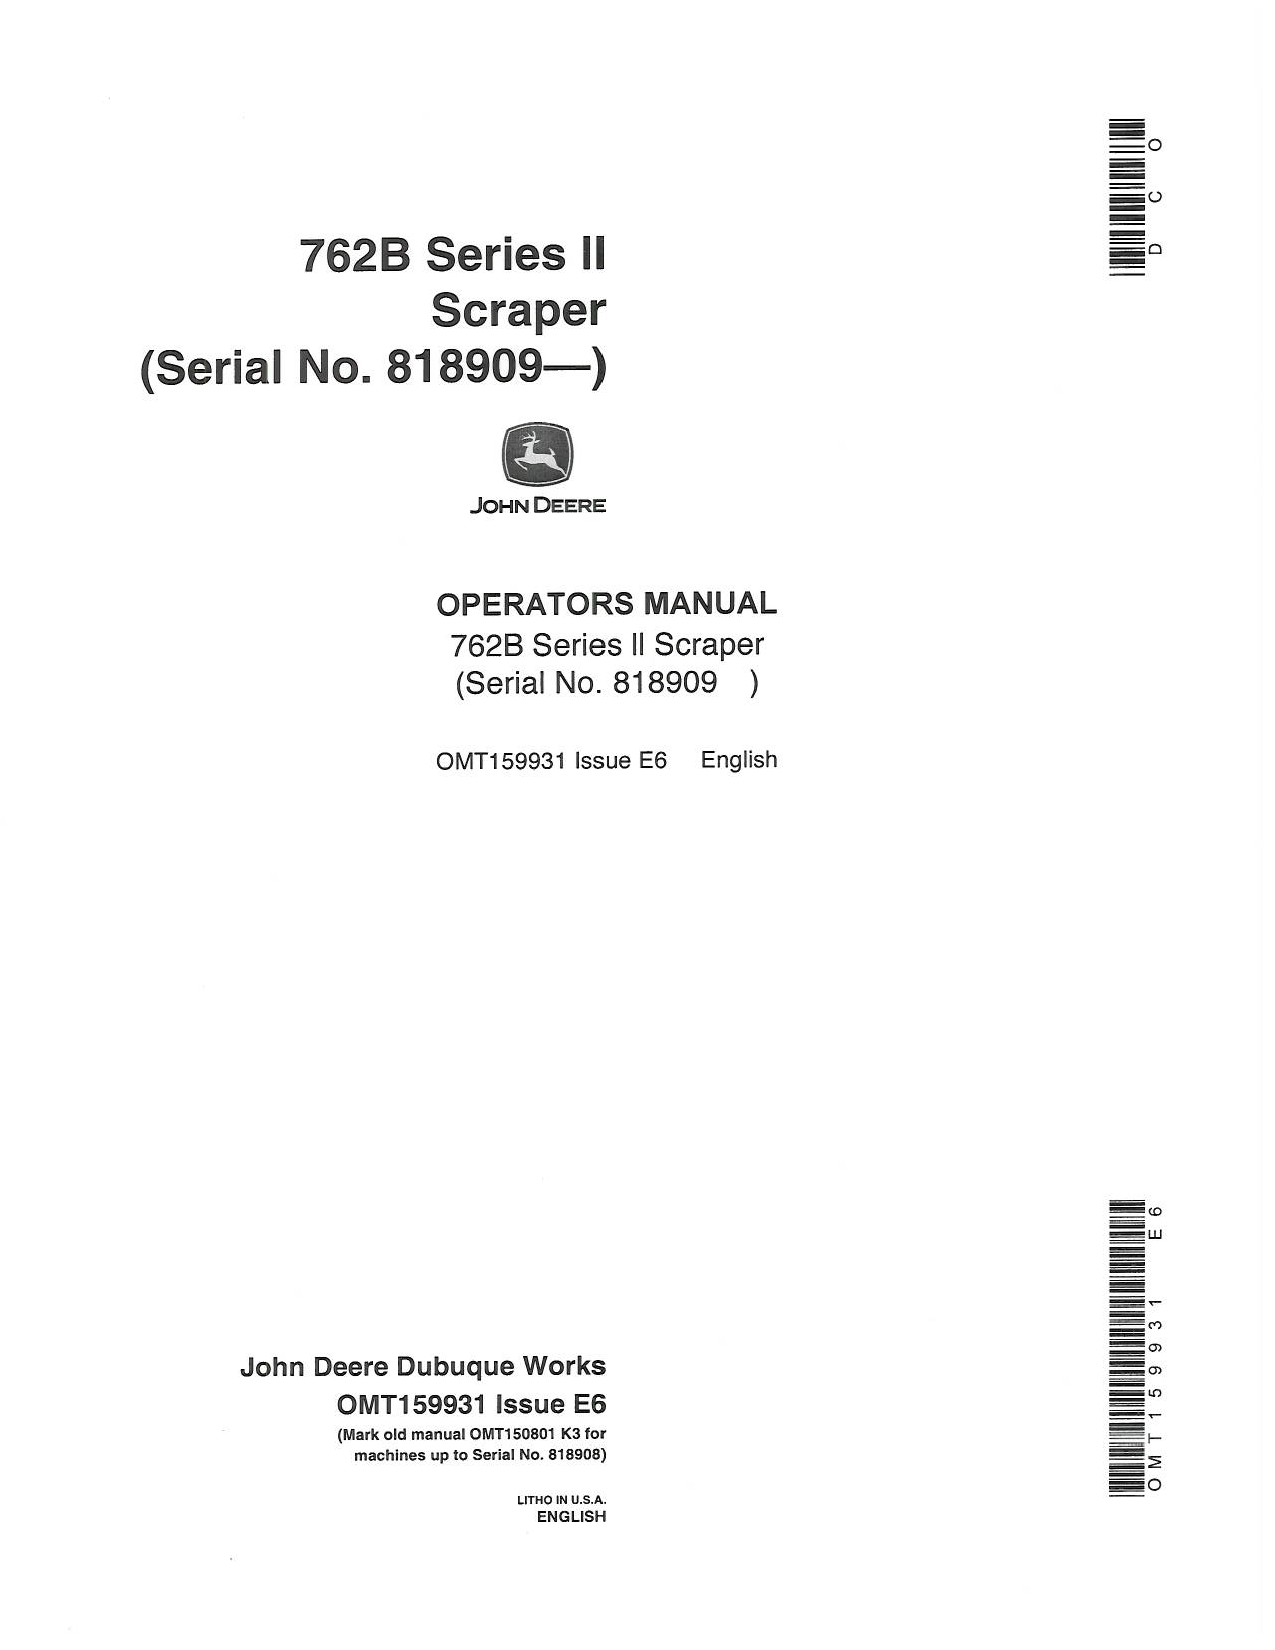 John Deere 762B User Manual